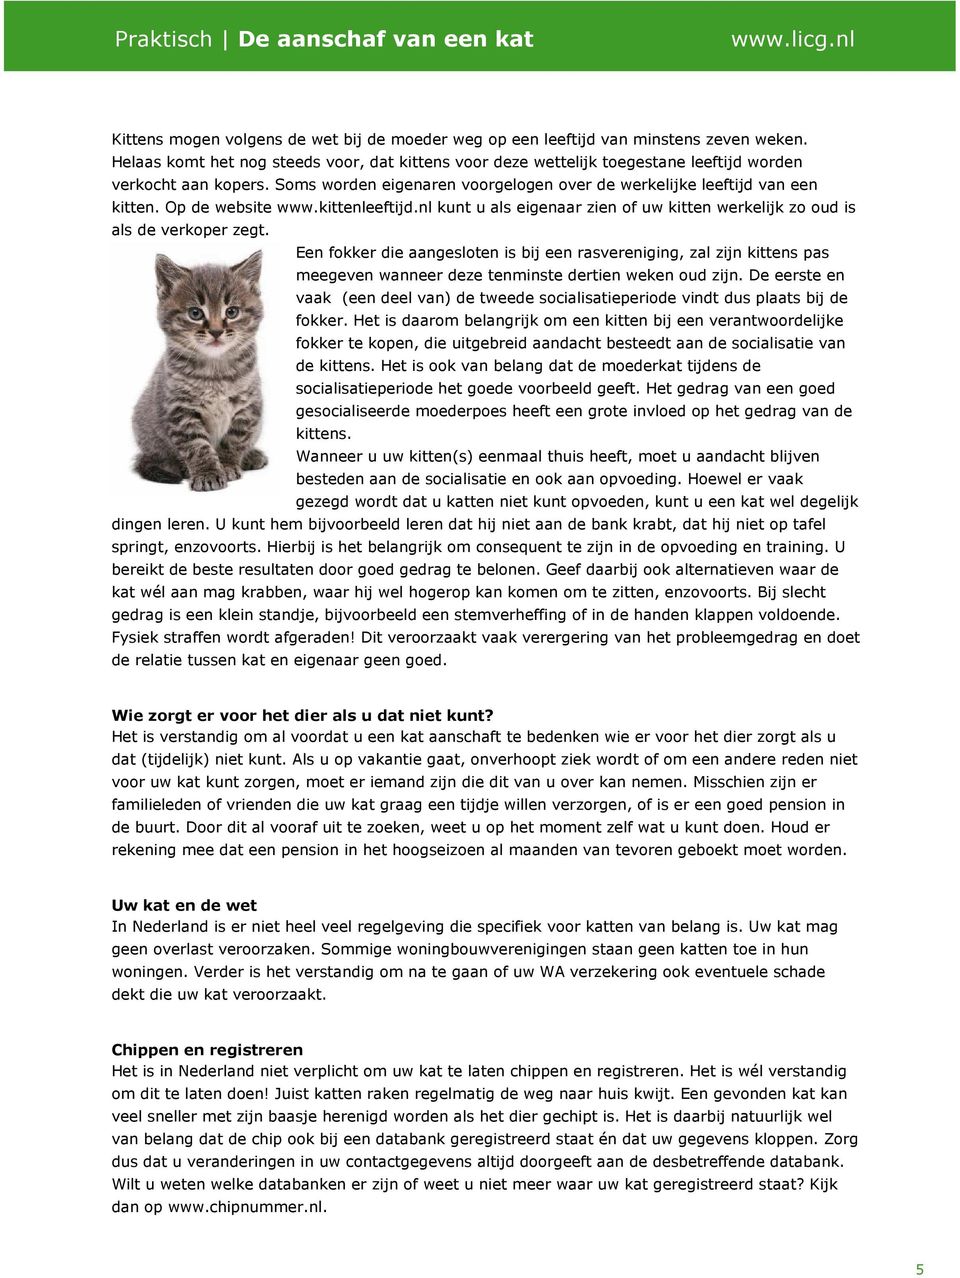 Op de website www.kittenleeftijd.nl kunt u als eigenaar zien of uw kitten werkelijk zo oud is als de verkoper zegt.